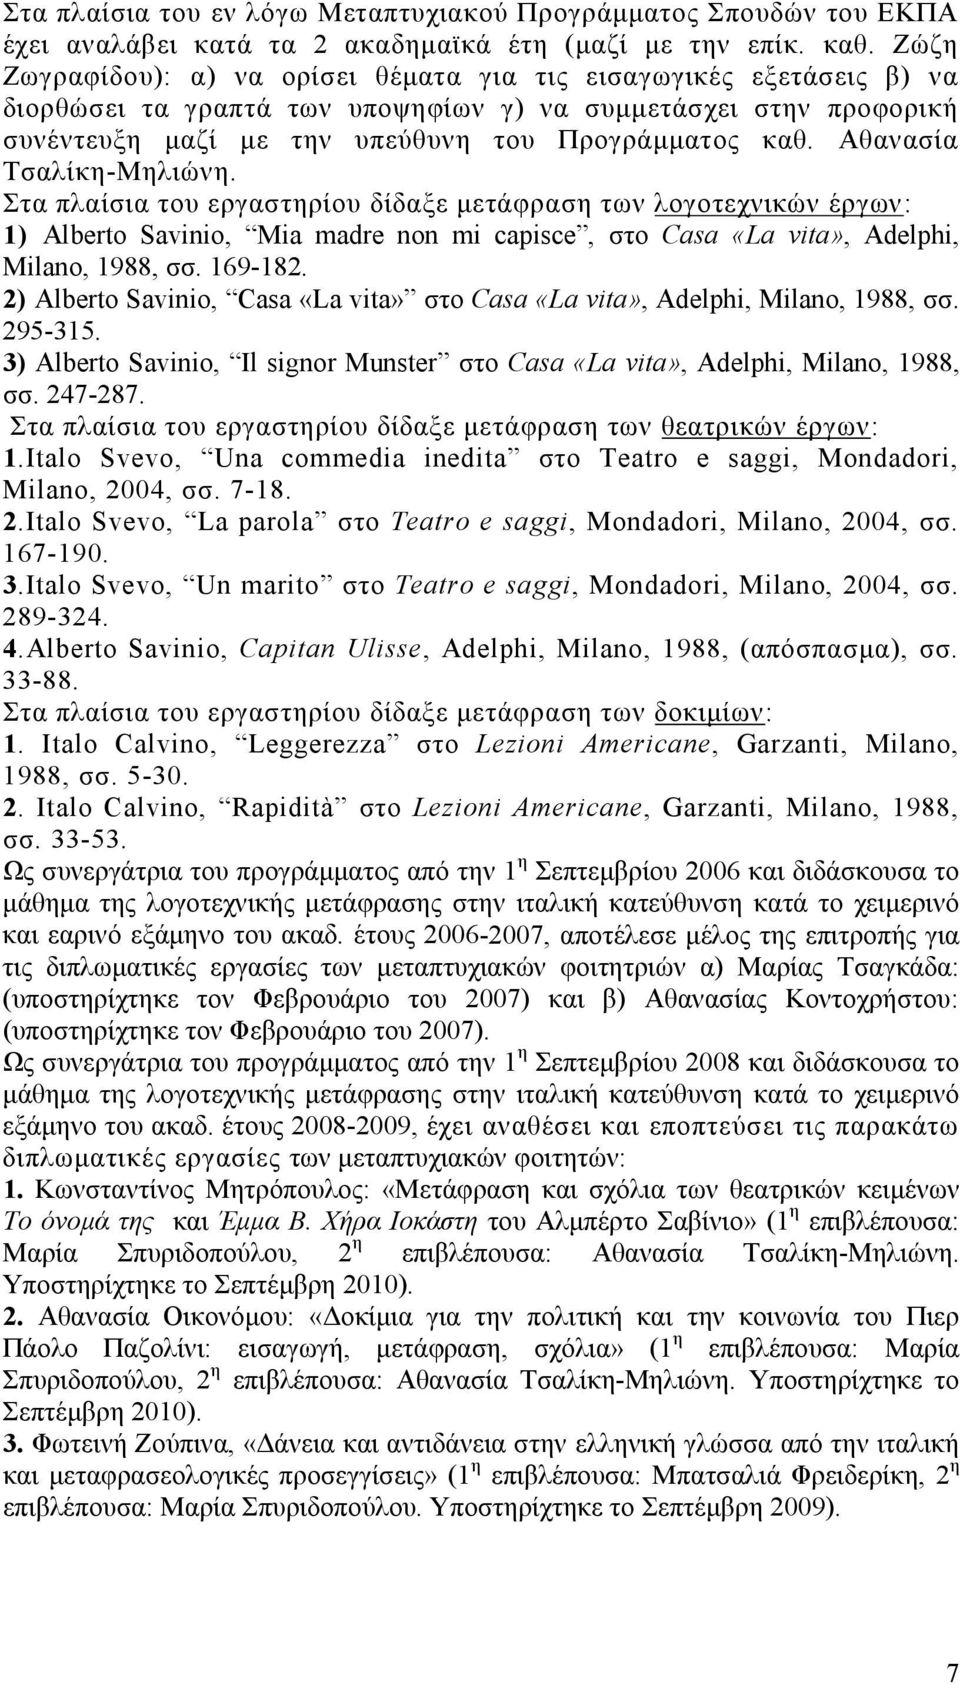 Αθανασία Τσαλίκη-Μηλιώνη. Στα πλαίσια του εργαστηρίου δίδαξε μετάφραση των λογοτεχνικών έργων: 1) Alberto Savinio, Mia madre non mi capisce, στο Casa «La vita», Adelphi, Milano, 1988, σσ. 169-182.